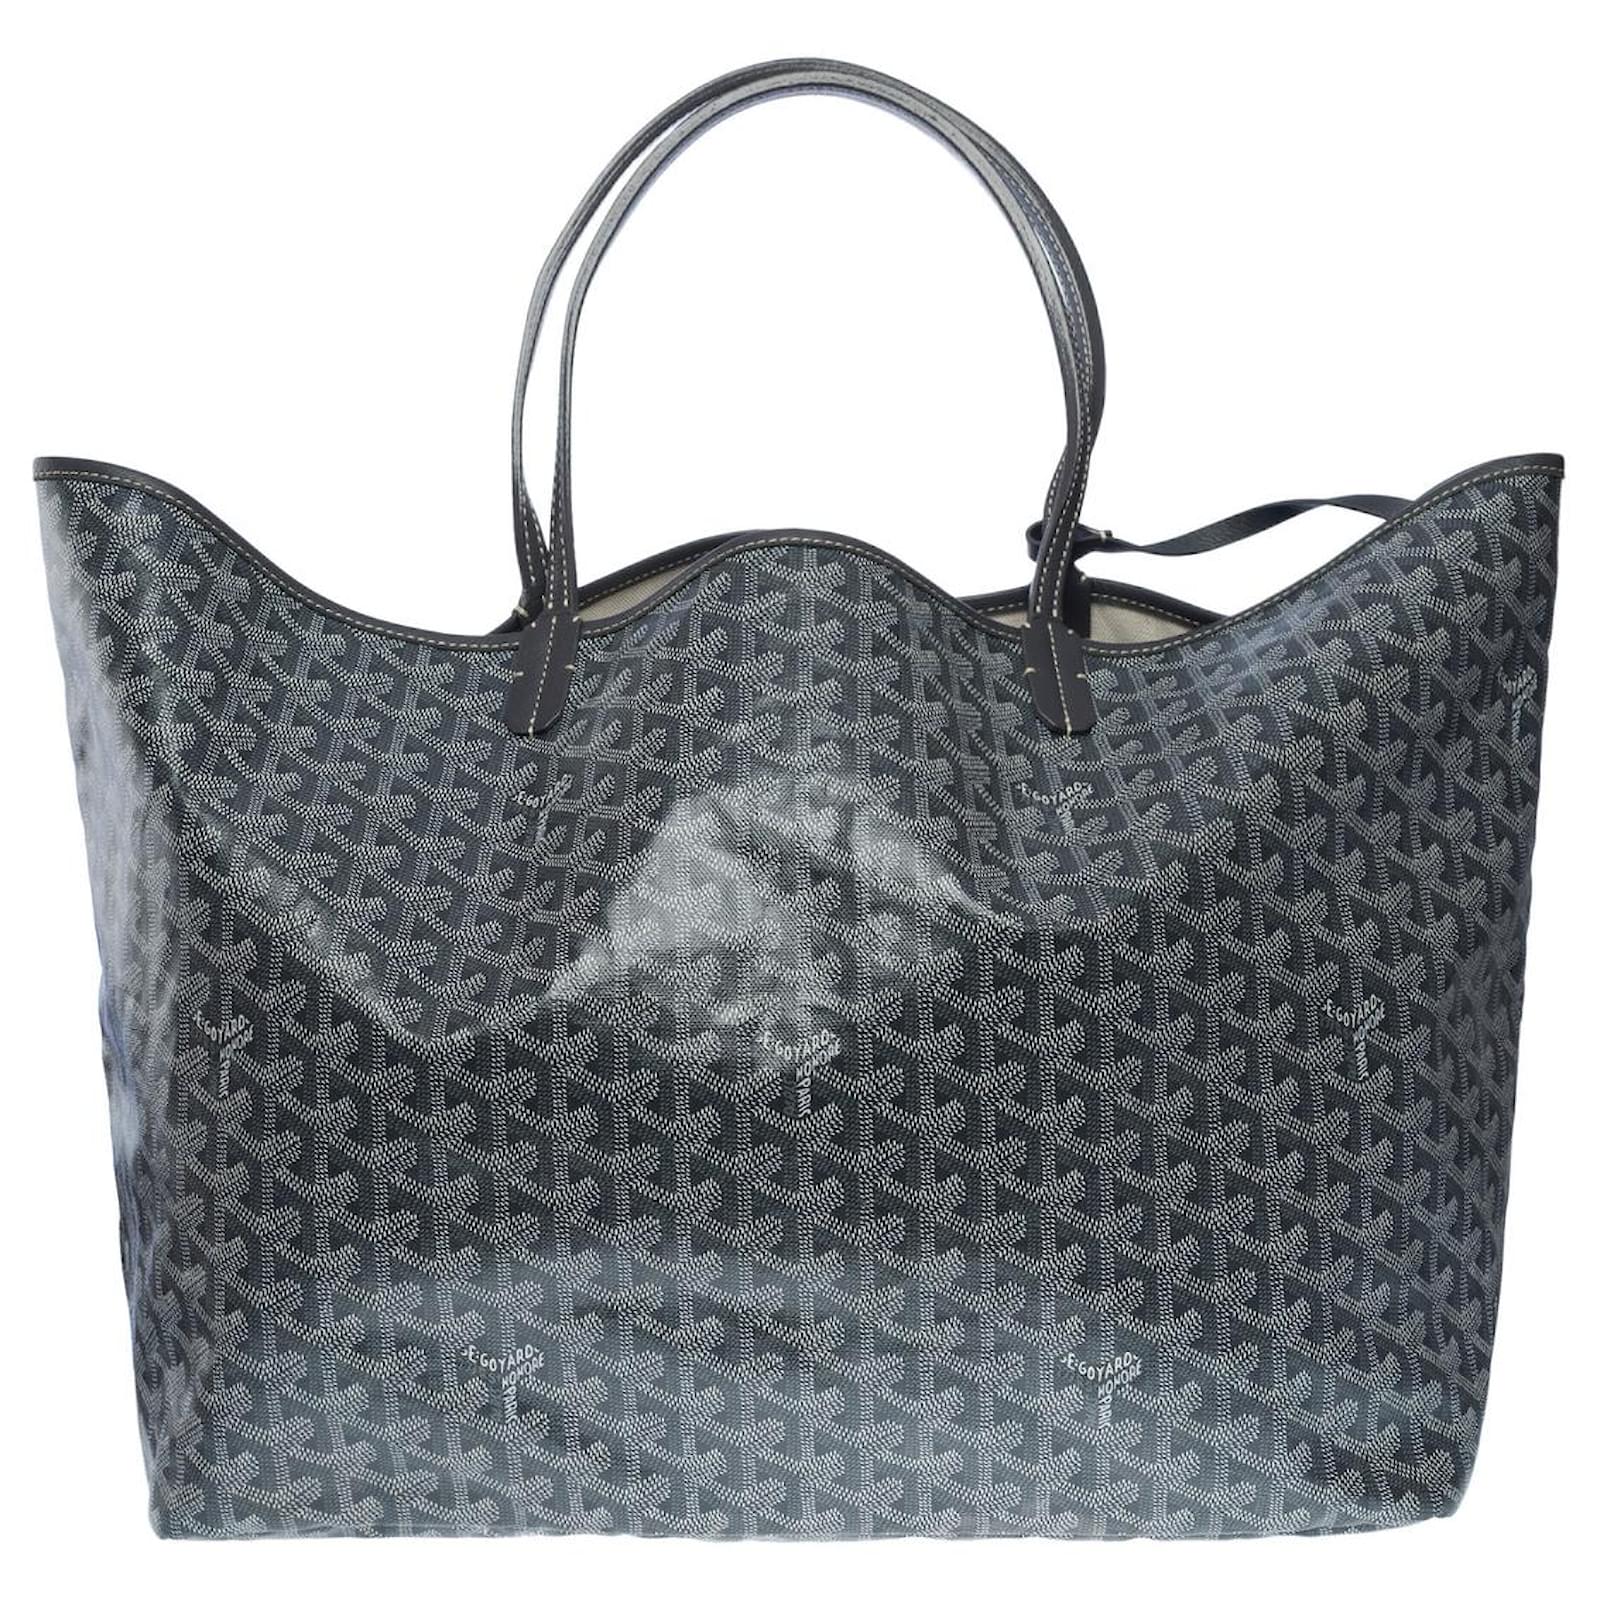 Handbags Goyard New Goyard Cabas Saint Louis GM Handbag in Gray Goyardine Canvas Pouch Bag